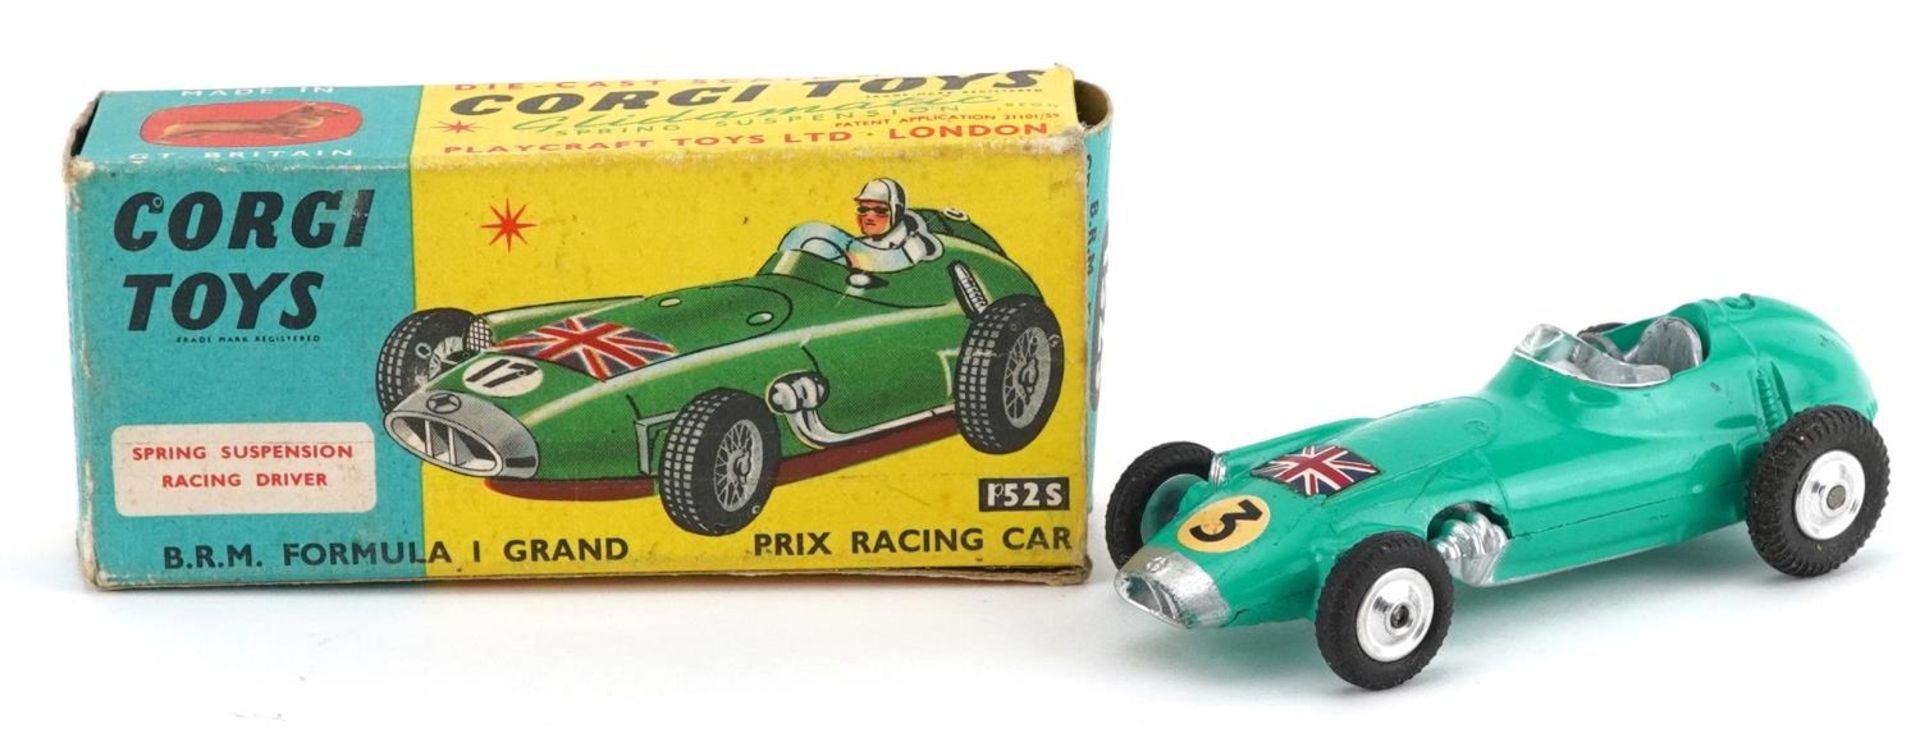 Corgi Toys BRM Formula I Grand Prix diecast racing car with box